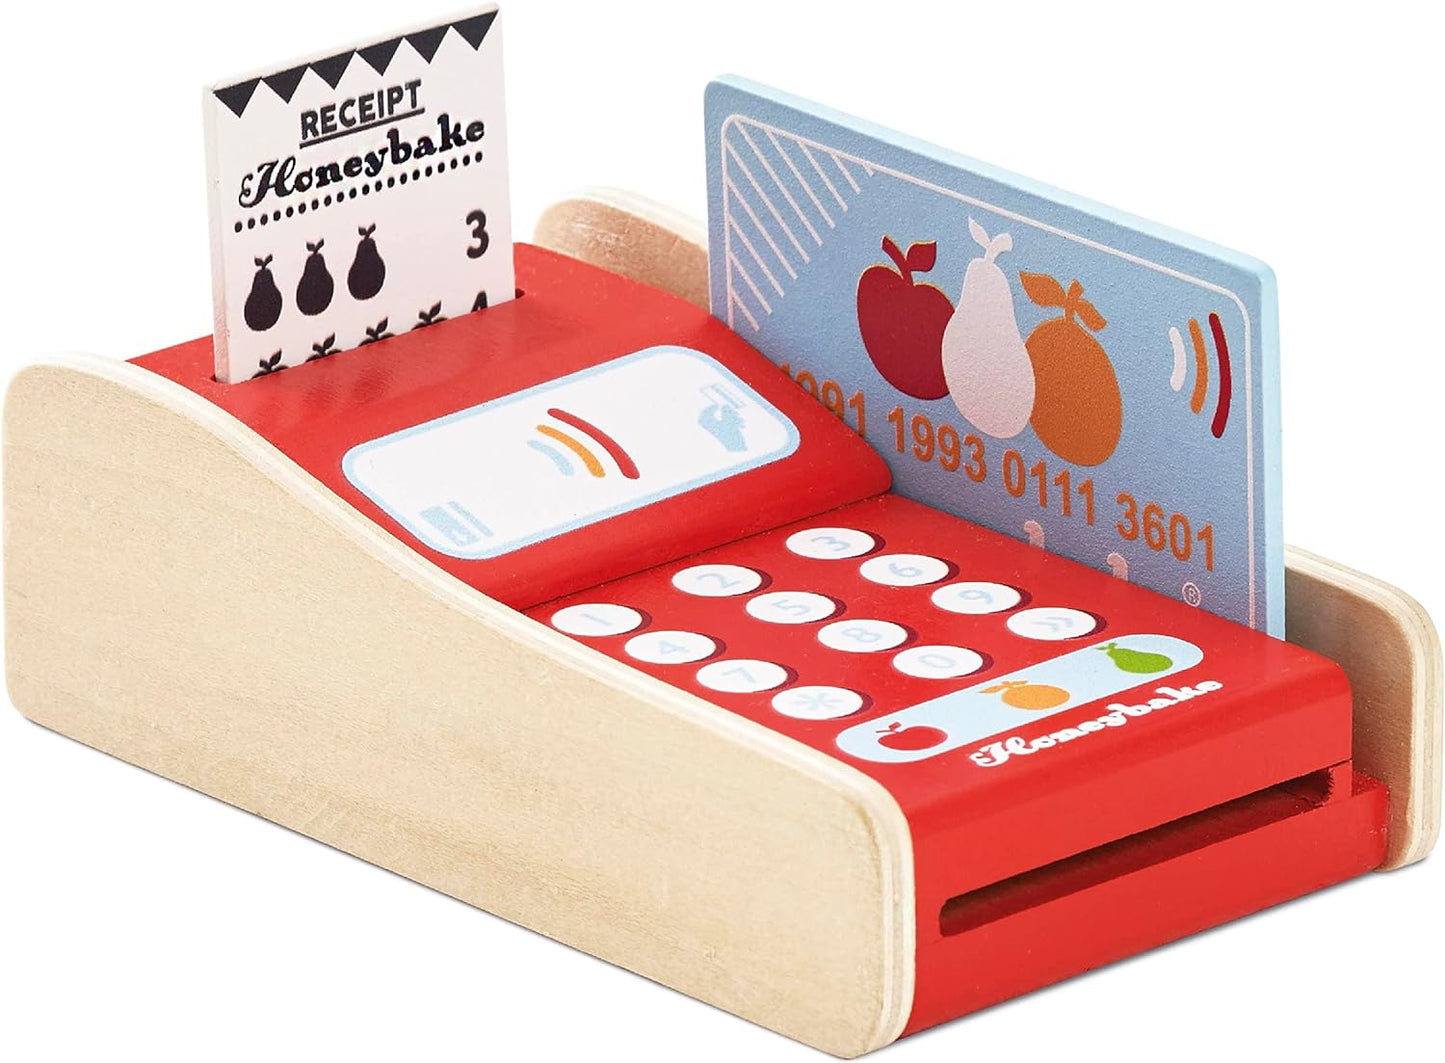 Le Toy Van - Brinquedo de dramatização de caixa registradora Honeybake de madeira com recibo, abertura até gaveta e dinheiro fictício | Perfeito para supermercado, loja de alimentos ou café.